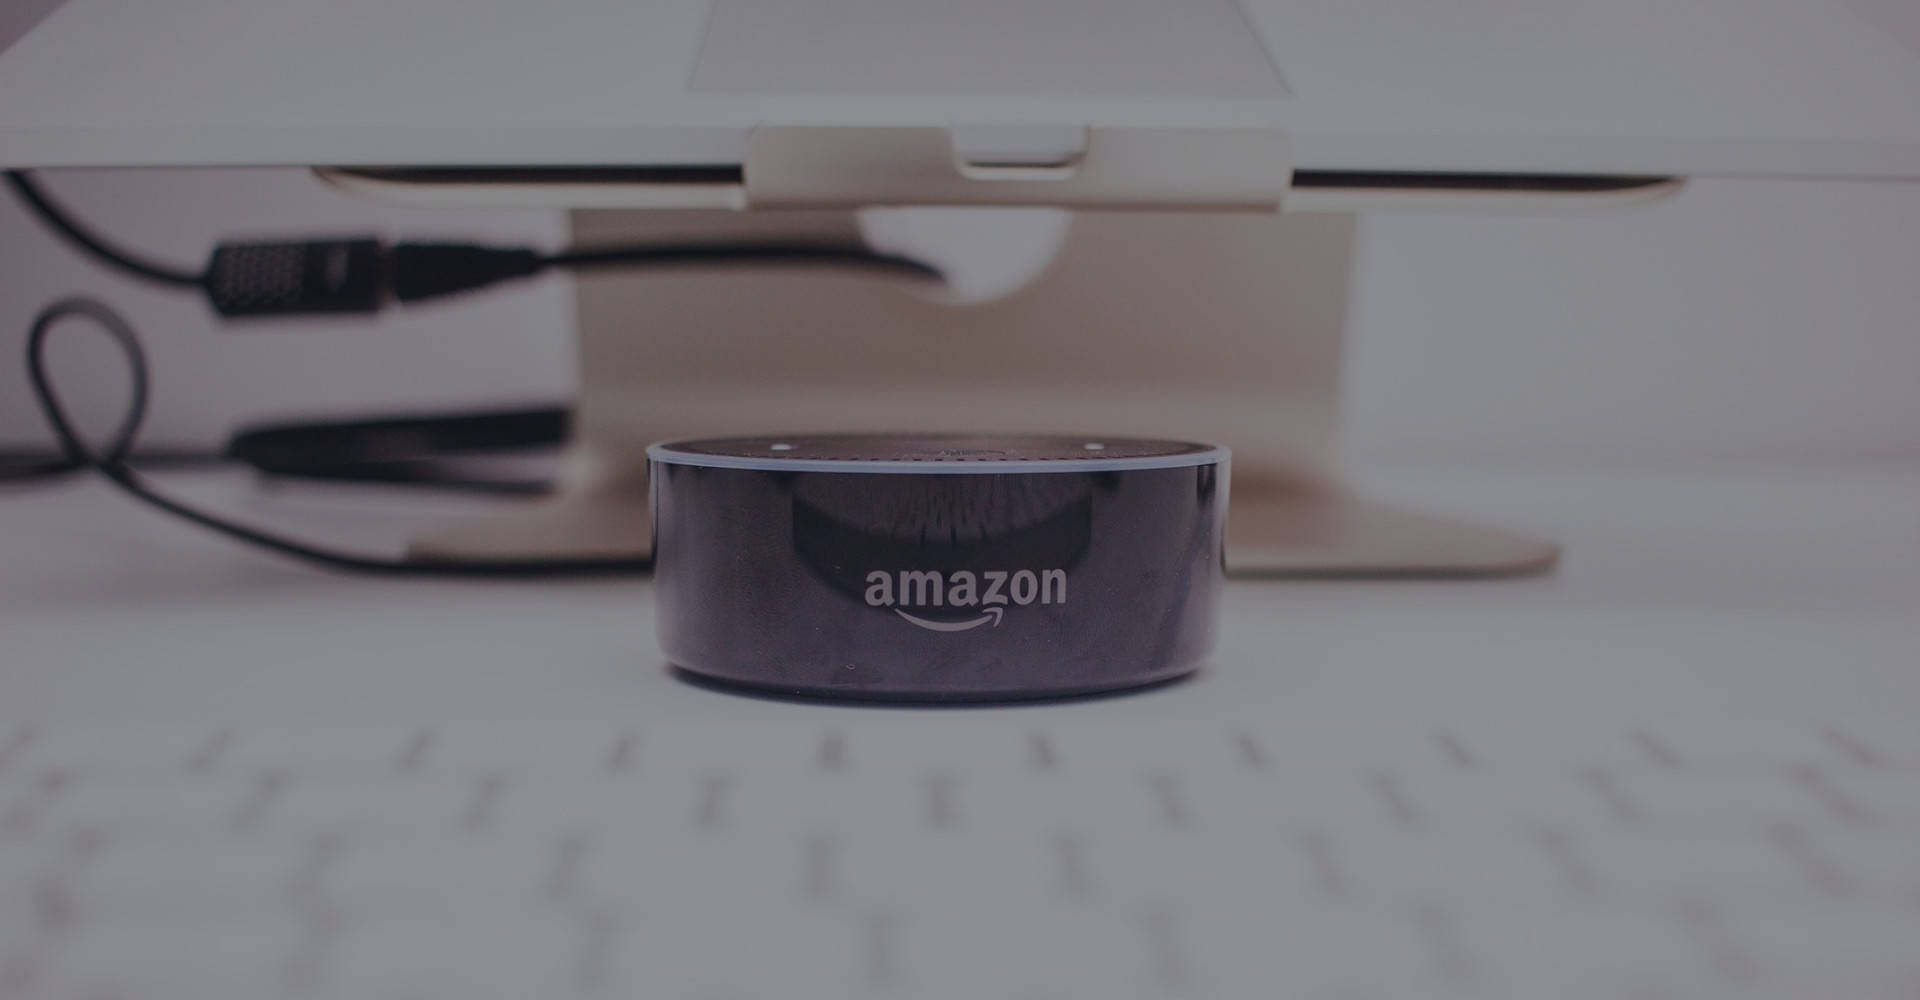 Amazon Echo on Desk